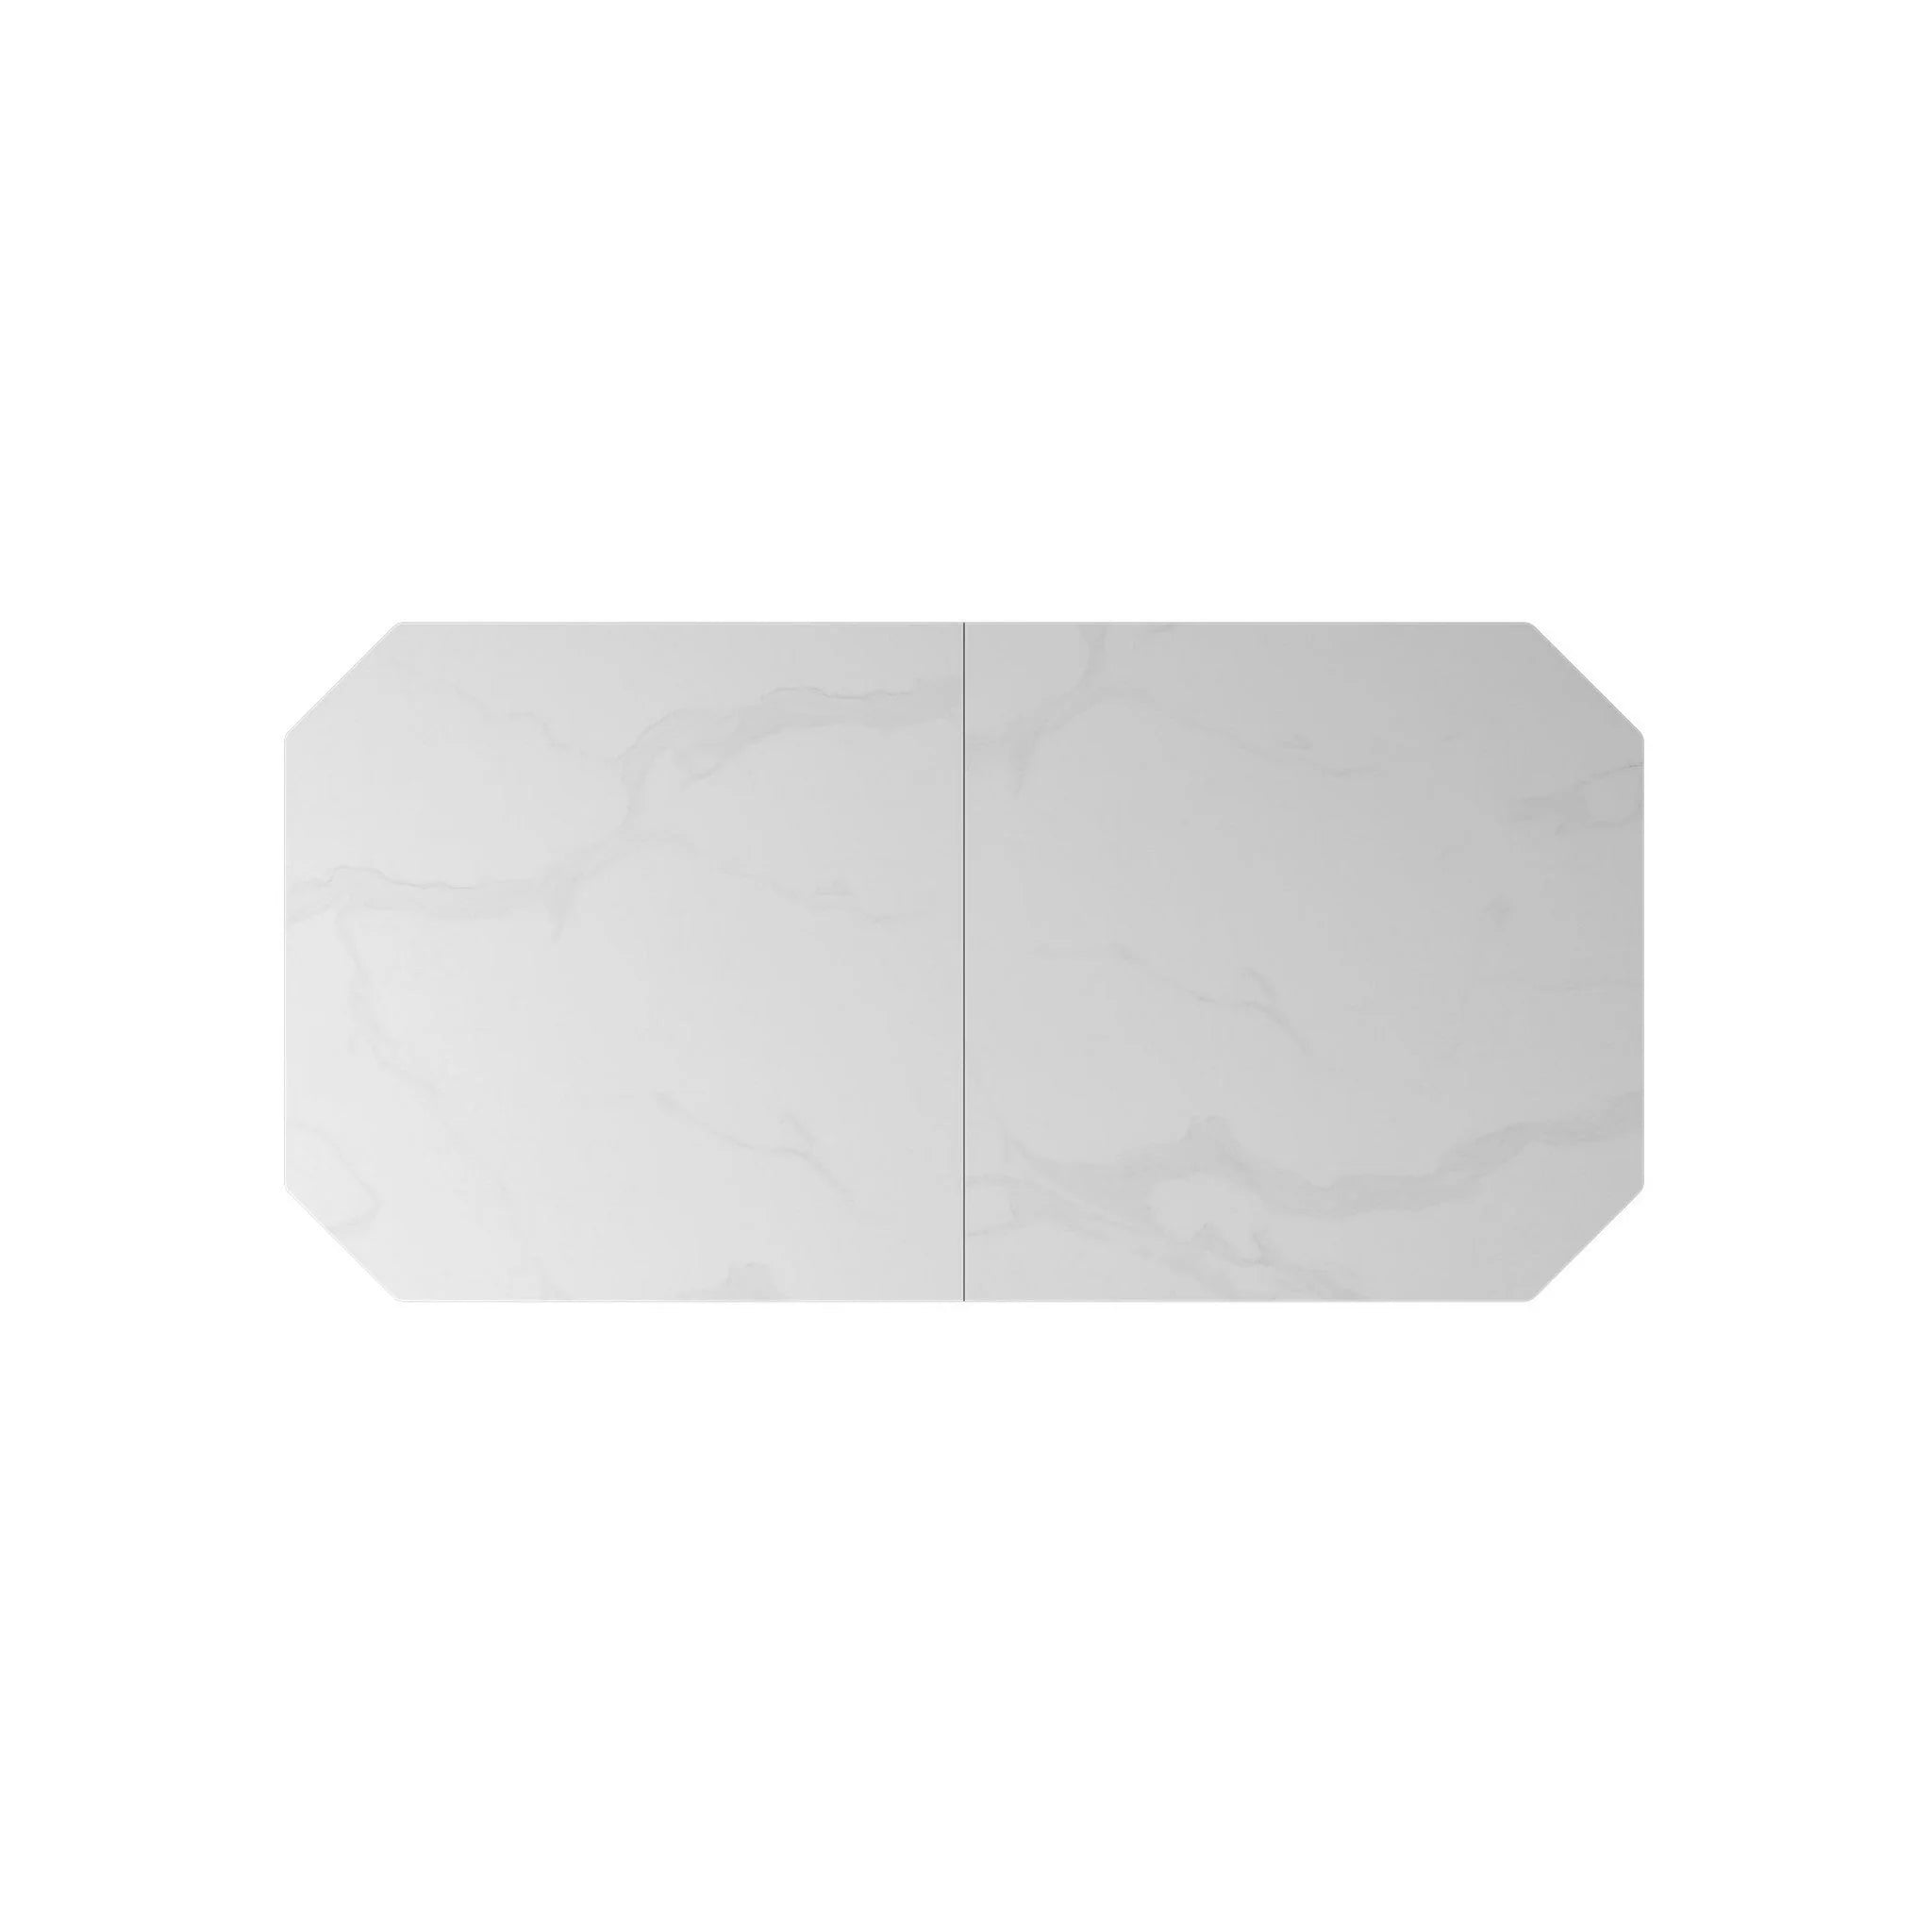 Merlin Matte White Ceramic Extending Dining Table - 180-220cm